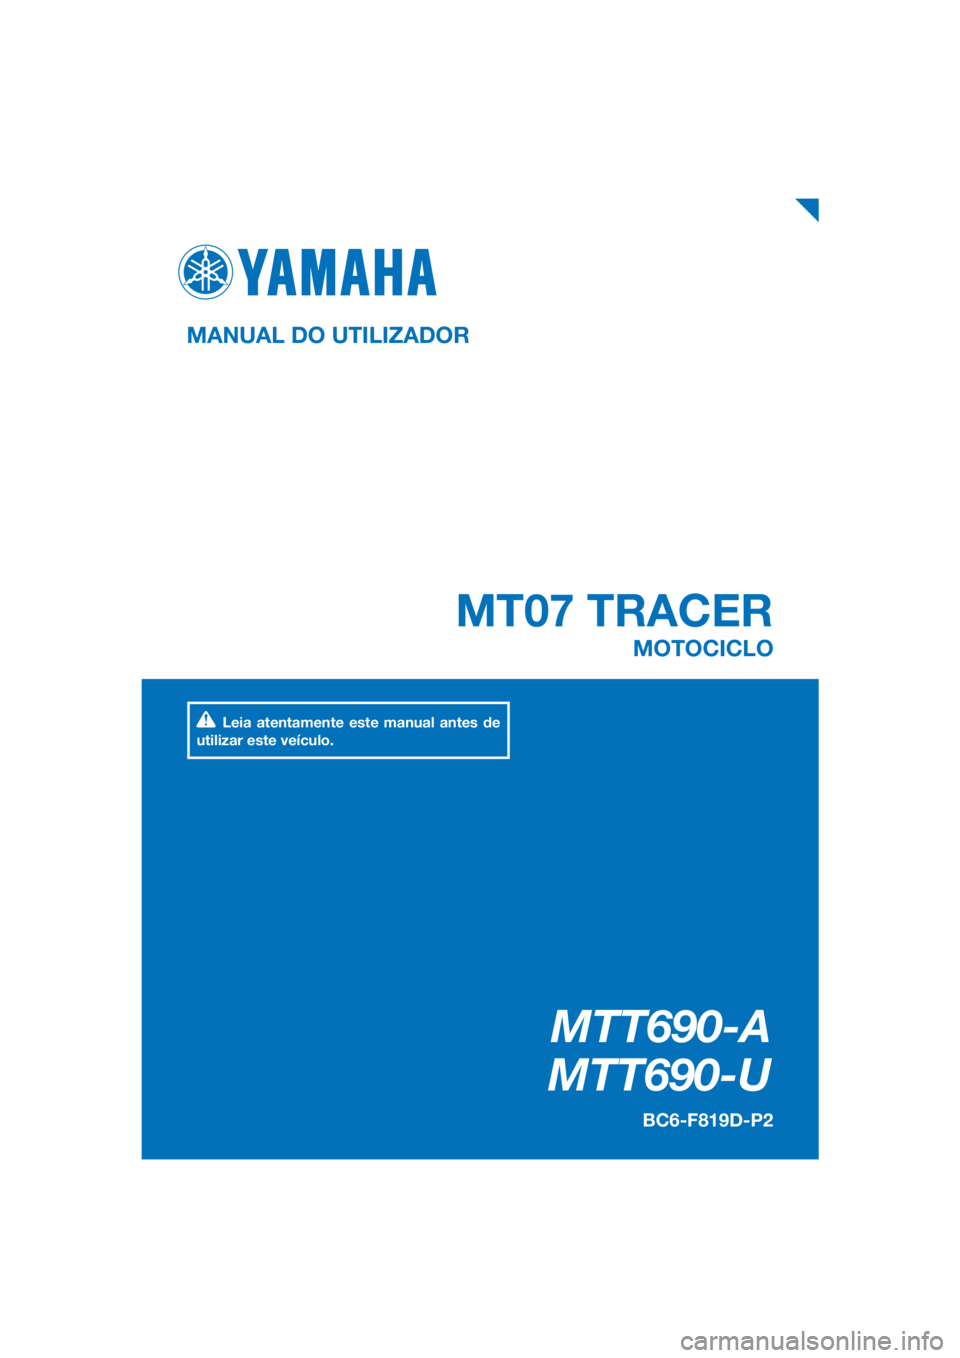 YAMAHA TRACER 700 2018  Manual de utilização (in Portuguese) PANTONE285C
MTT690-A
MTT690-U
MT07 TRACER
MANUAL DO UTILIZADOR
BC6-F819D-P2
MOTOCICLO
Leia atentamente este manual antes de 
utilizar este veículo.
[Portuguese  (P)] 